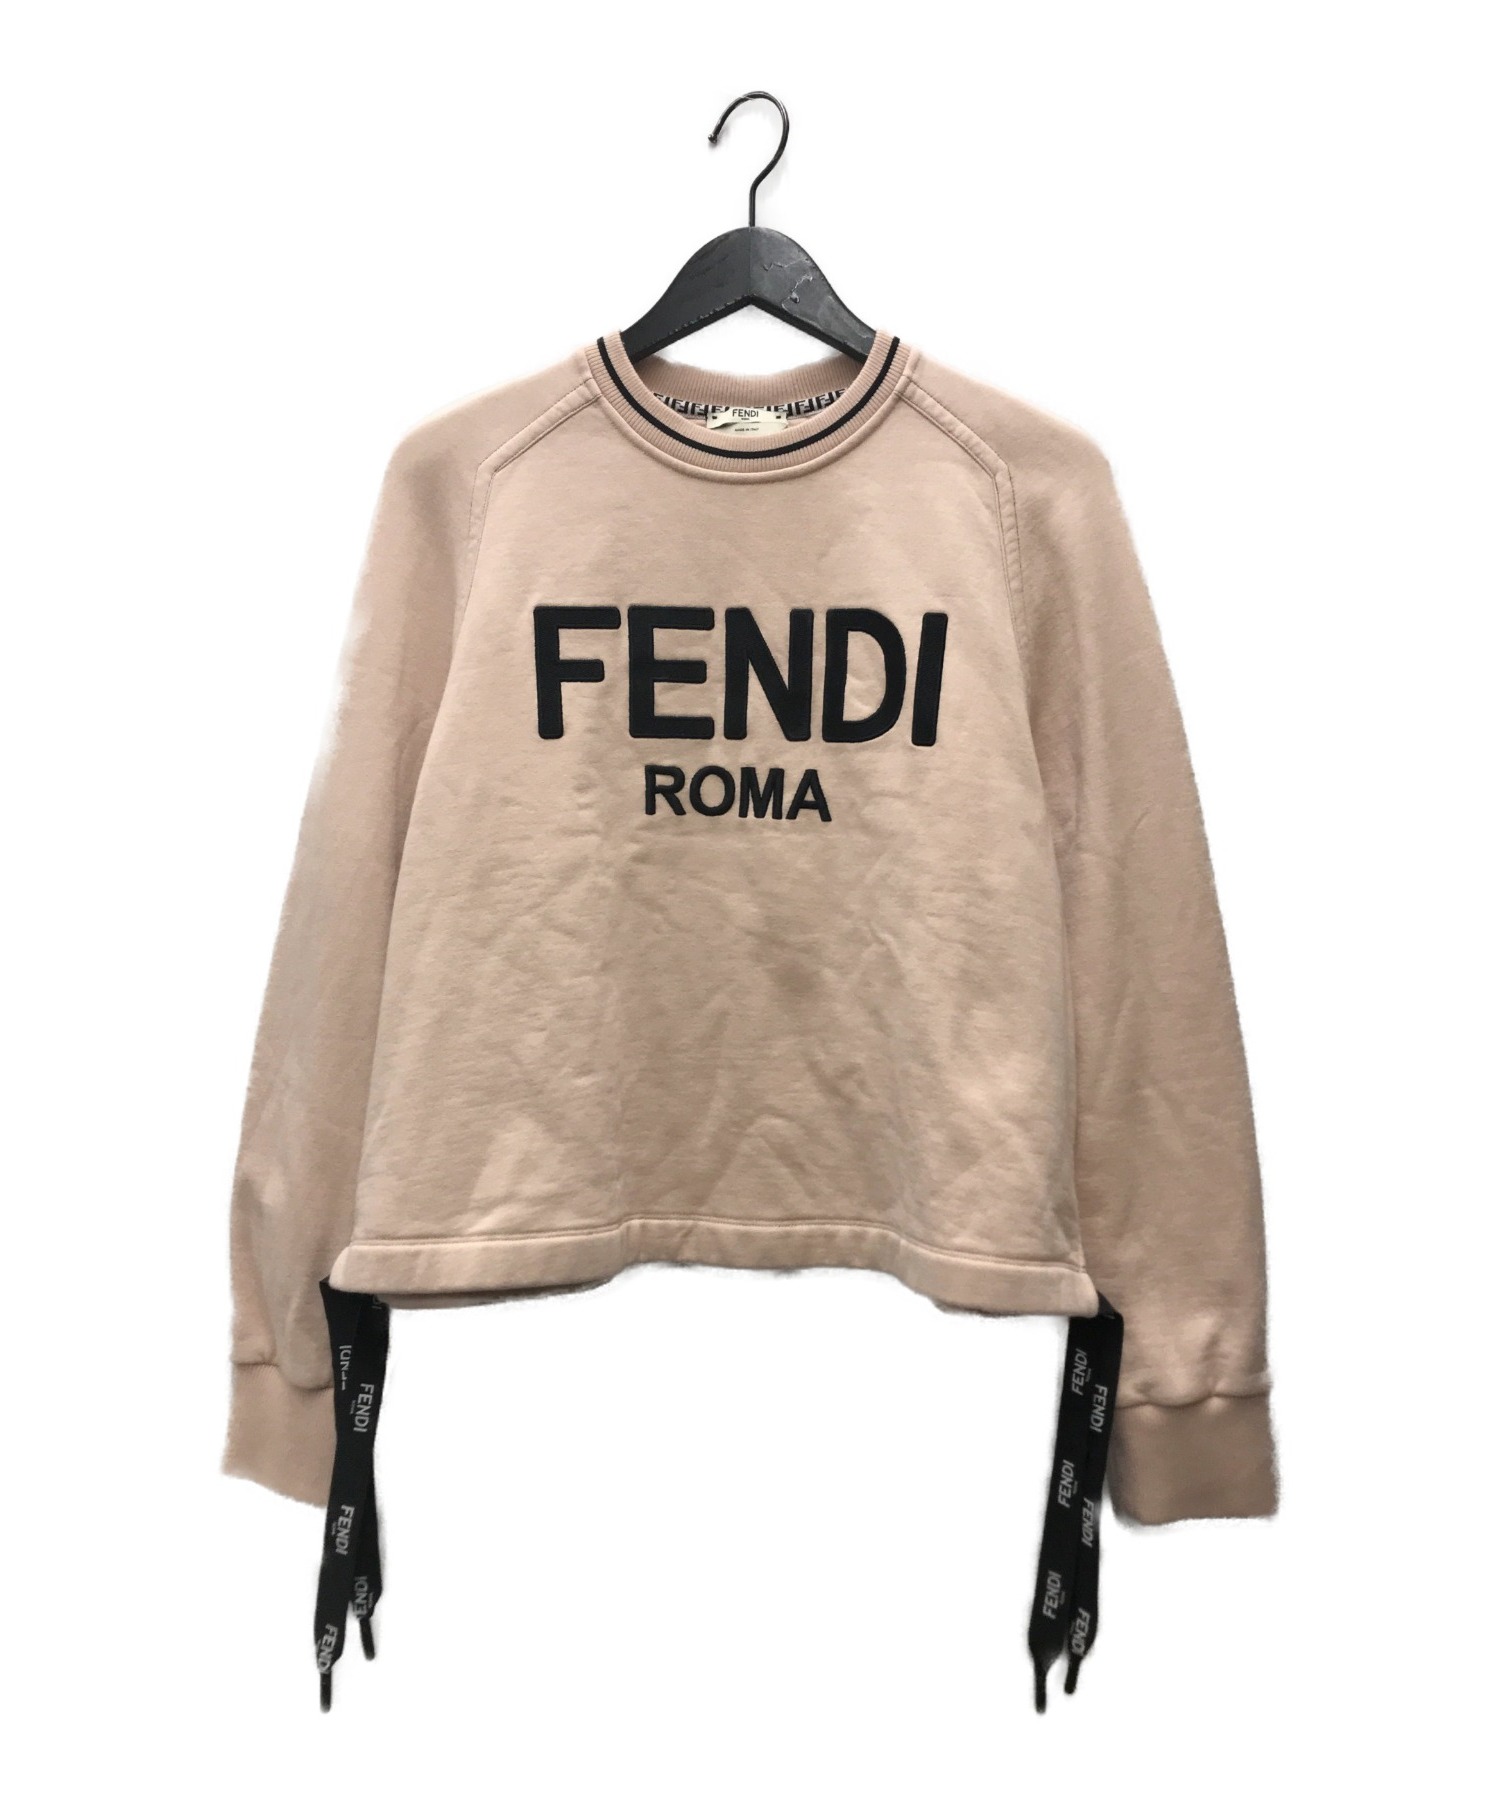 FENDI (フェンディ) ROMA スウェットシャツ ライトピンク サイズ:S